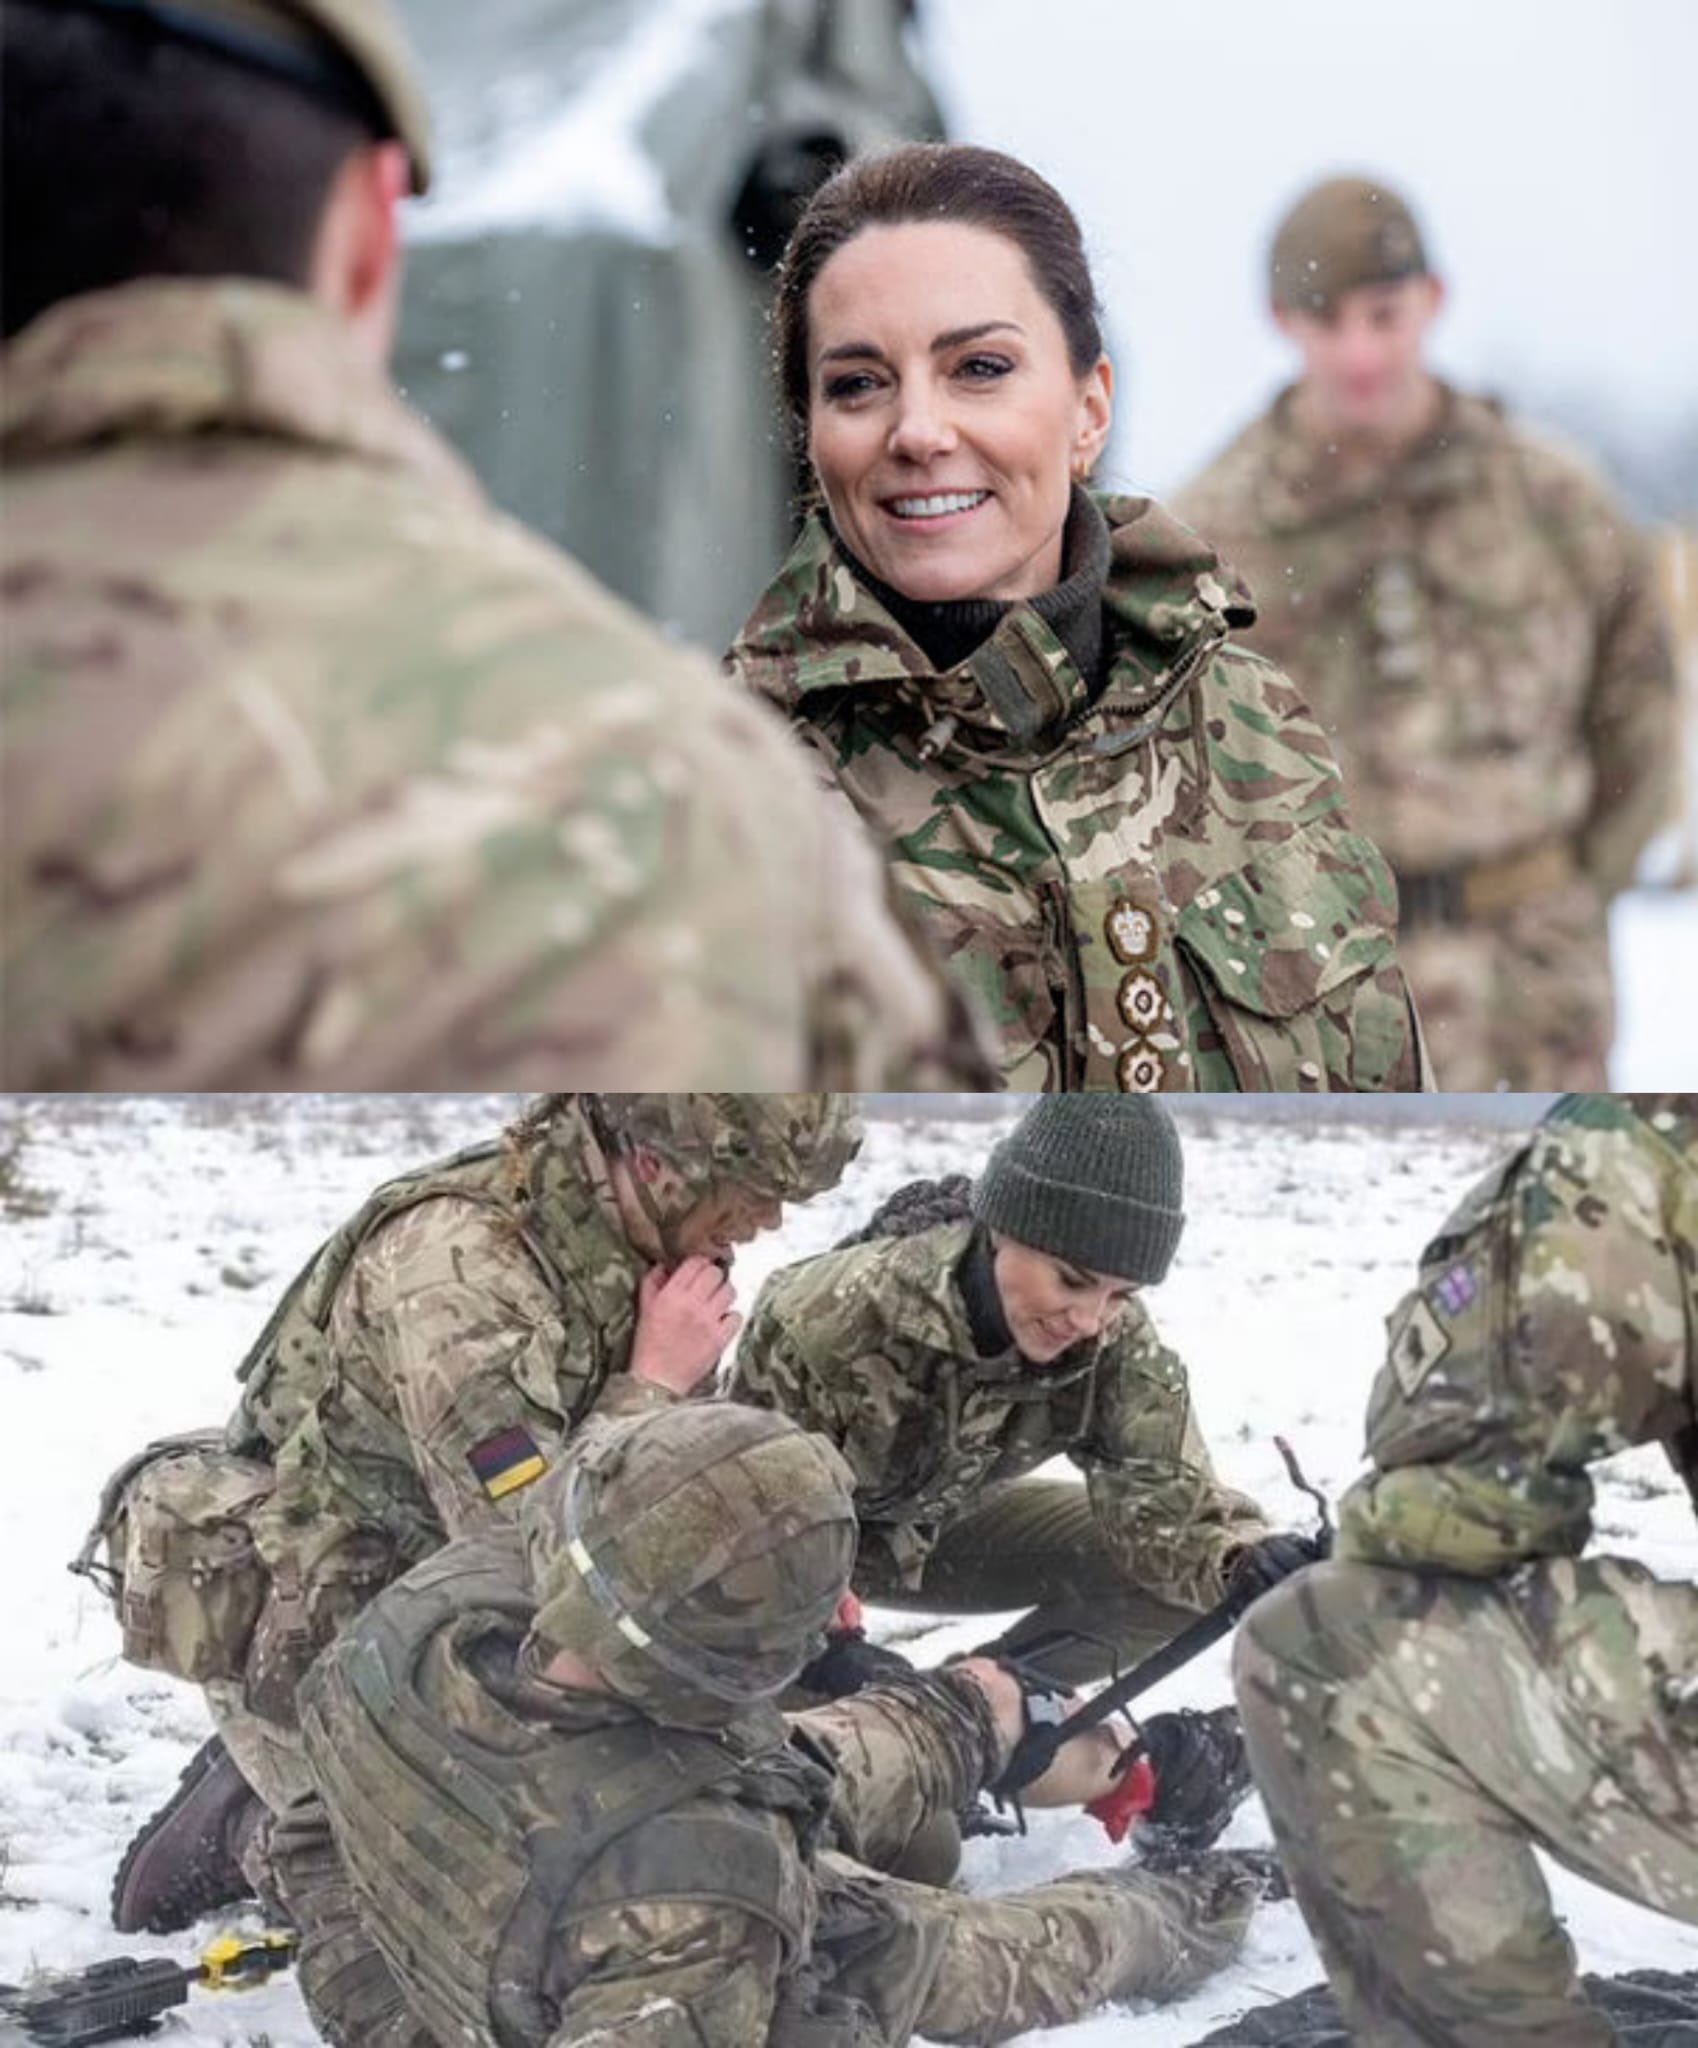 Кейт Миддлтон в военной форме поучаствовала в армейских учениях 8 марта